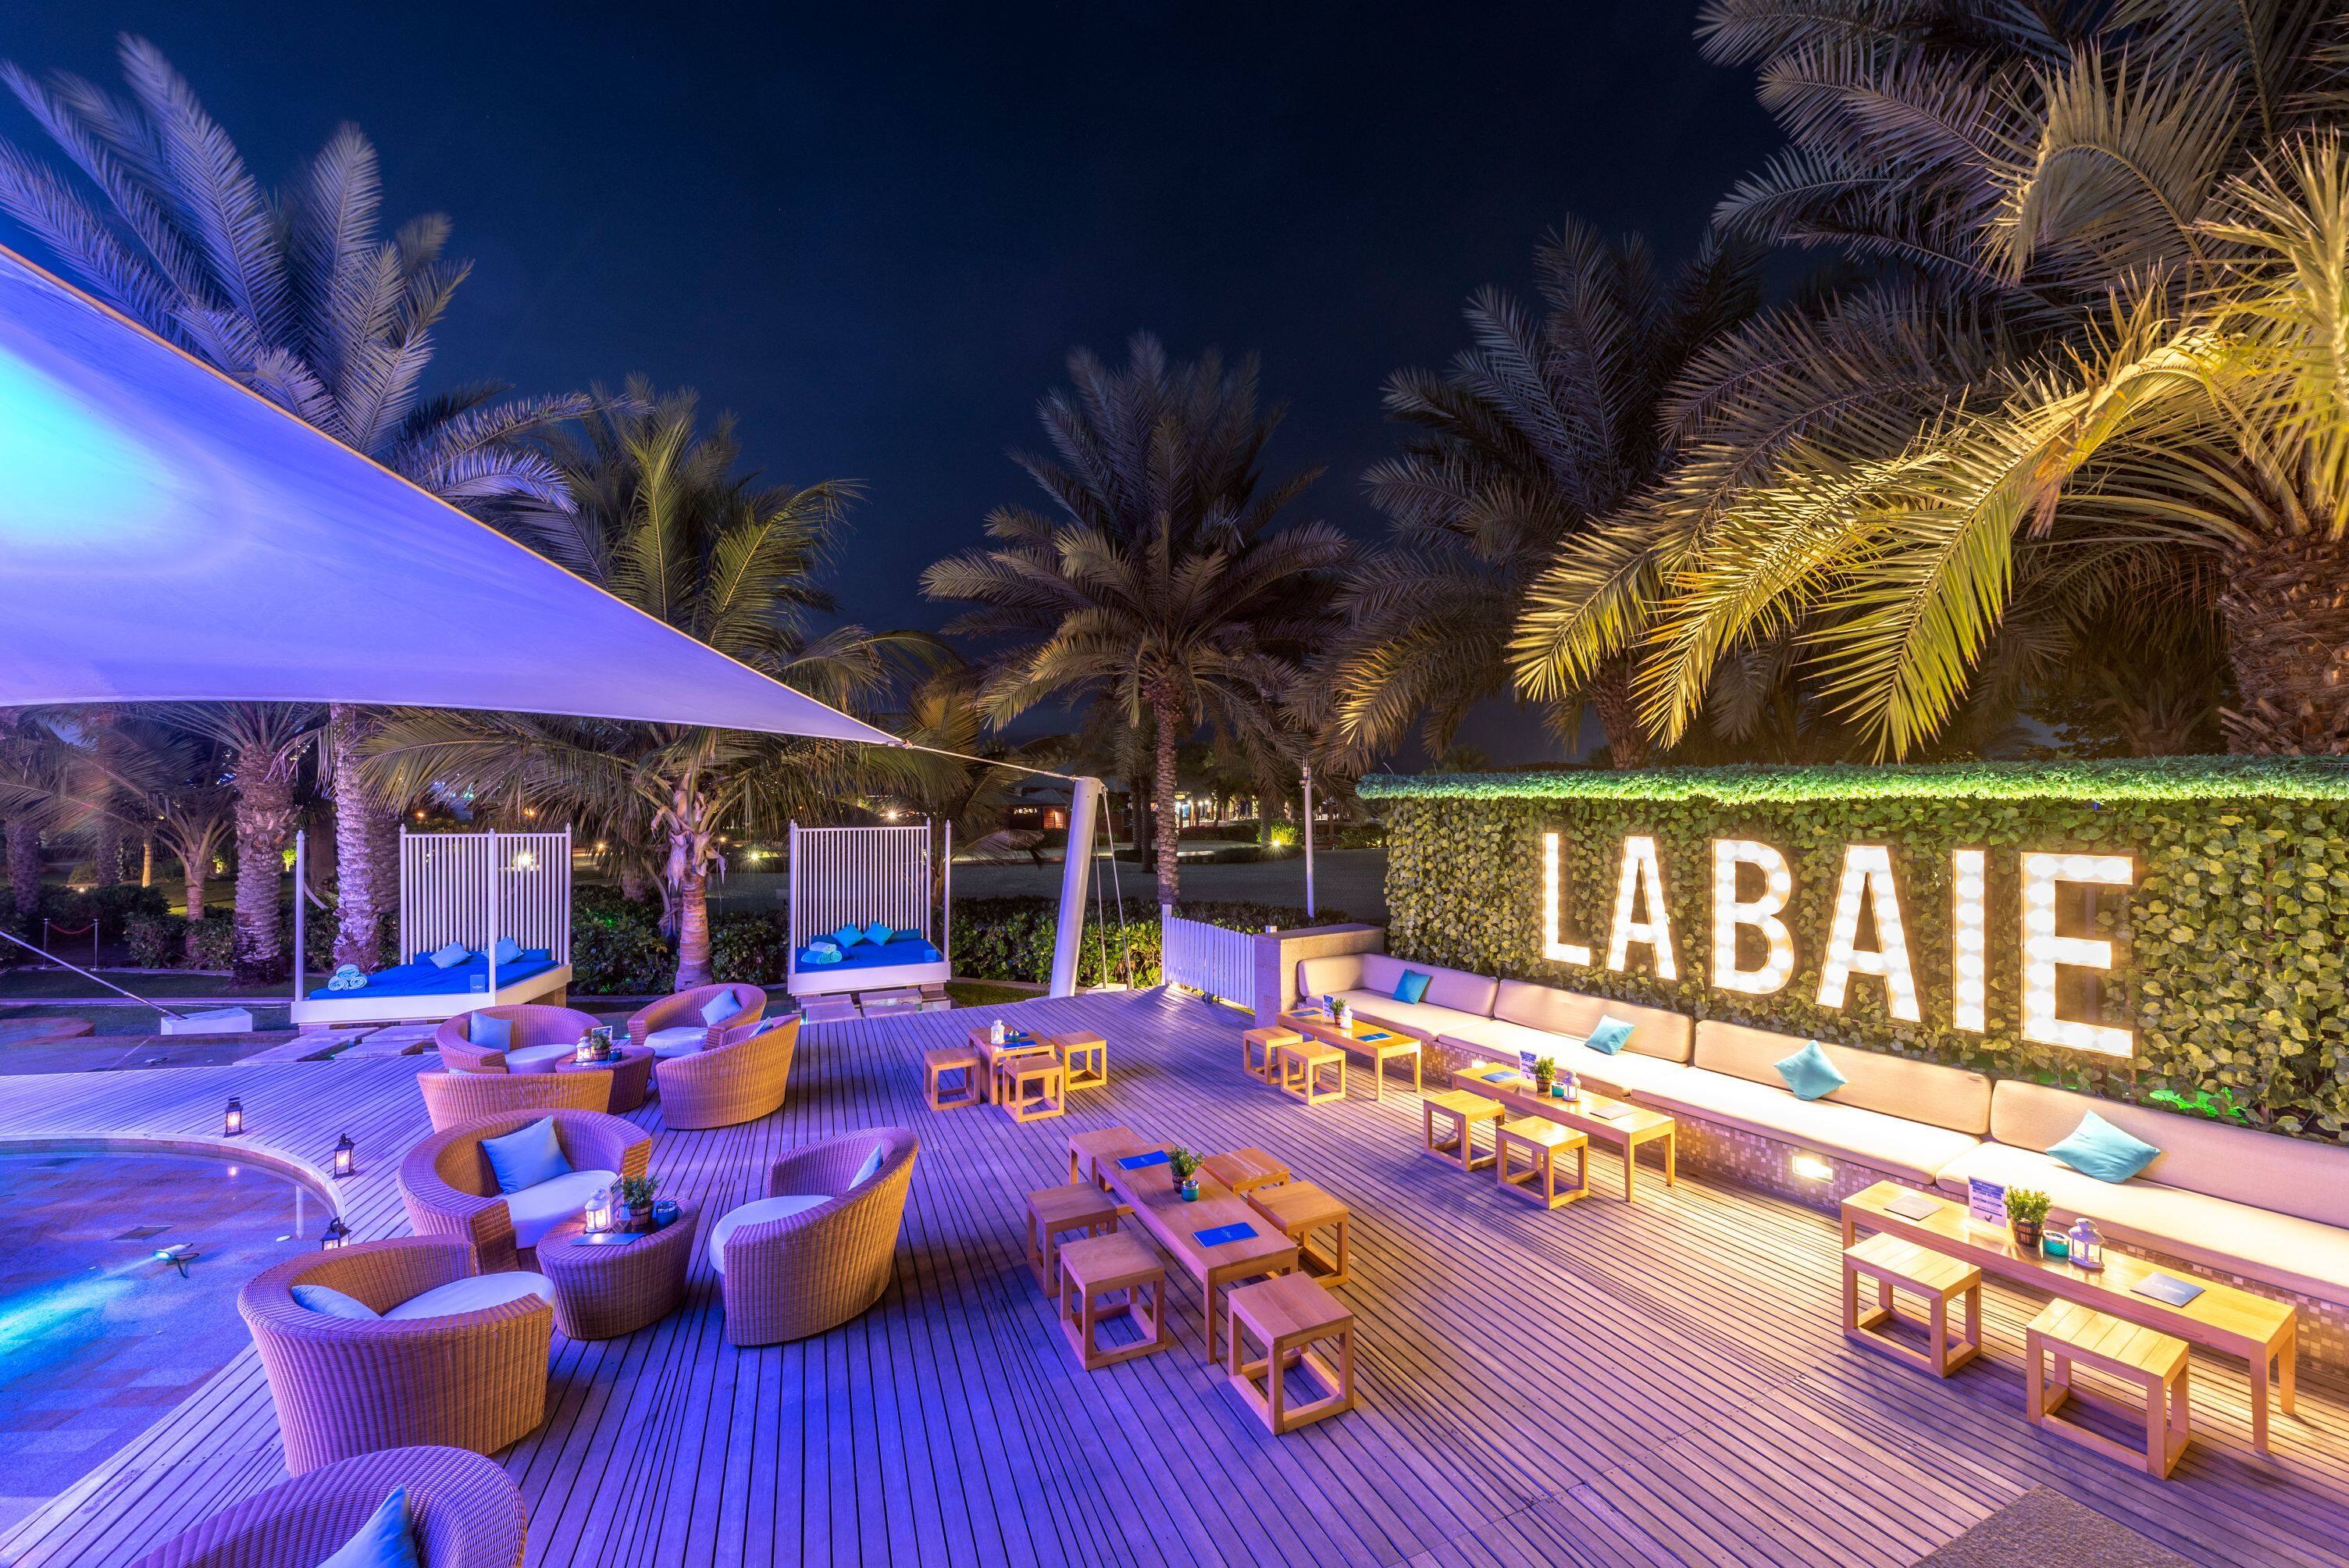 La Baie Lounge The Ritz Carlton Dubai Jbr Jumeirah Beach Residence Jbr Dubai